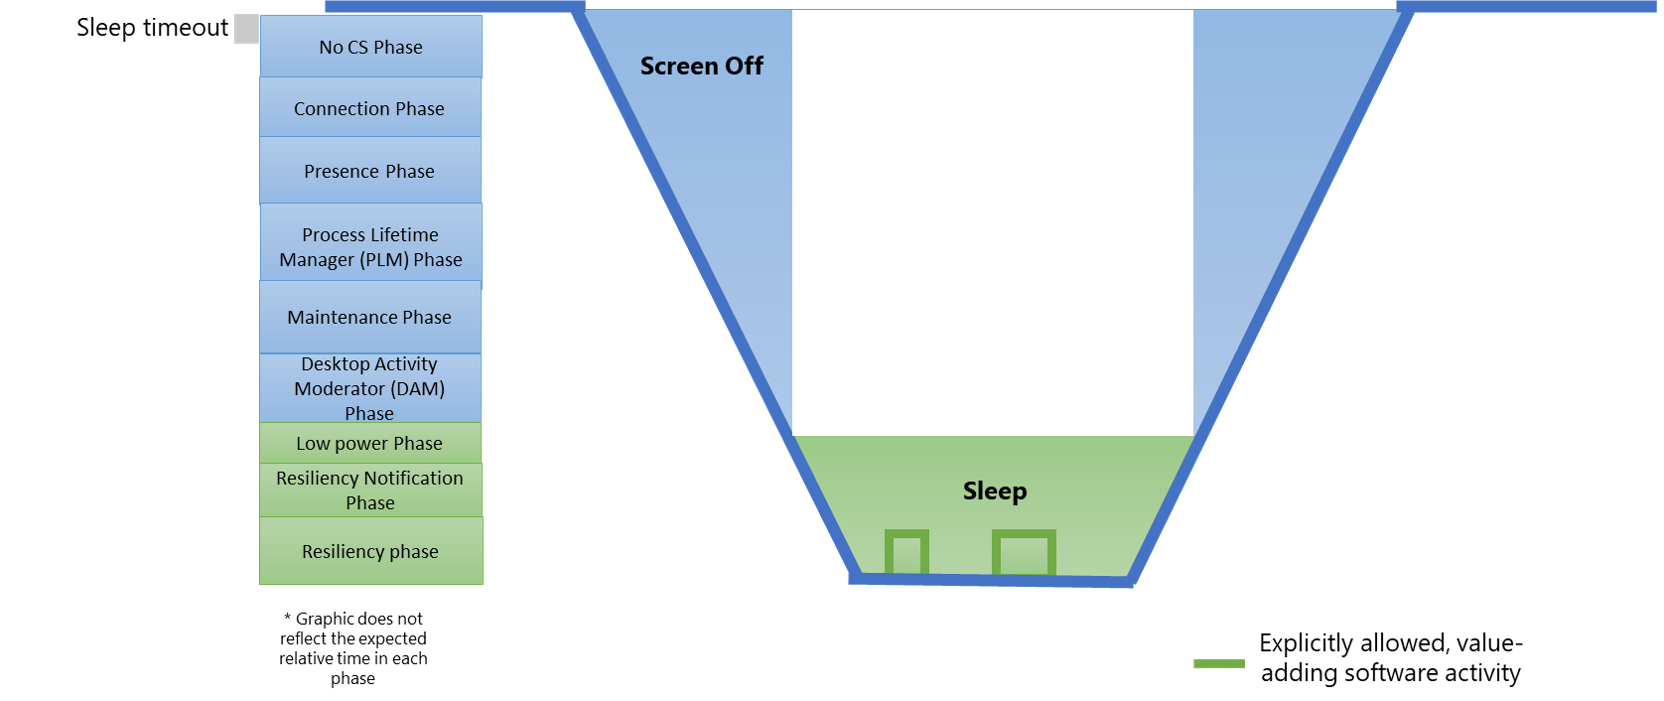 Abbildung 1: Diagramm mit Modern Standby-Systemzuständen und deren Beziehung zu den Softwarephasen